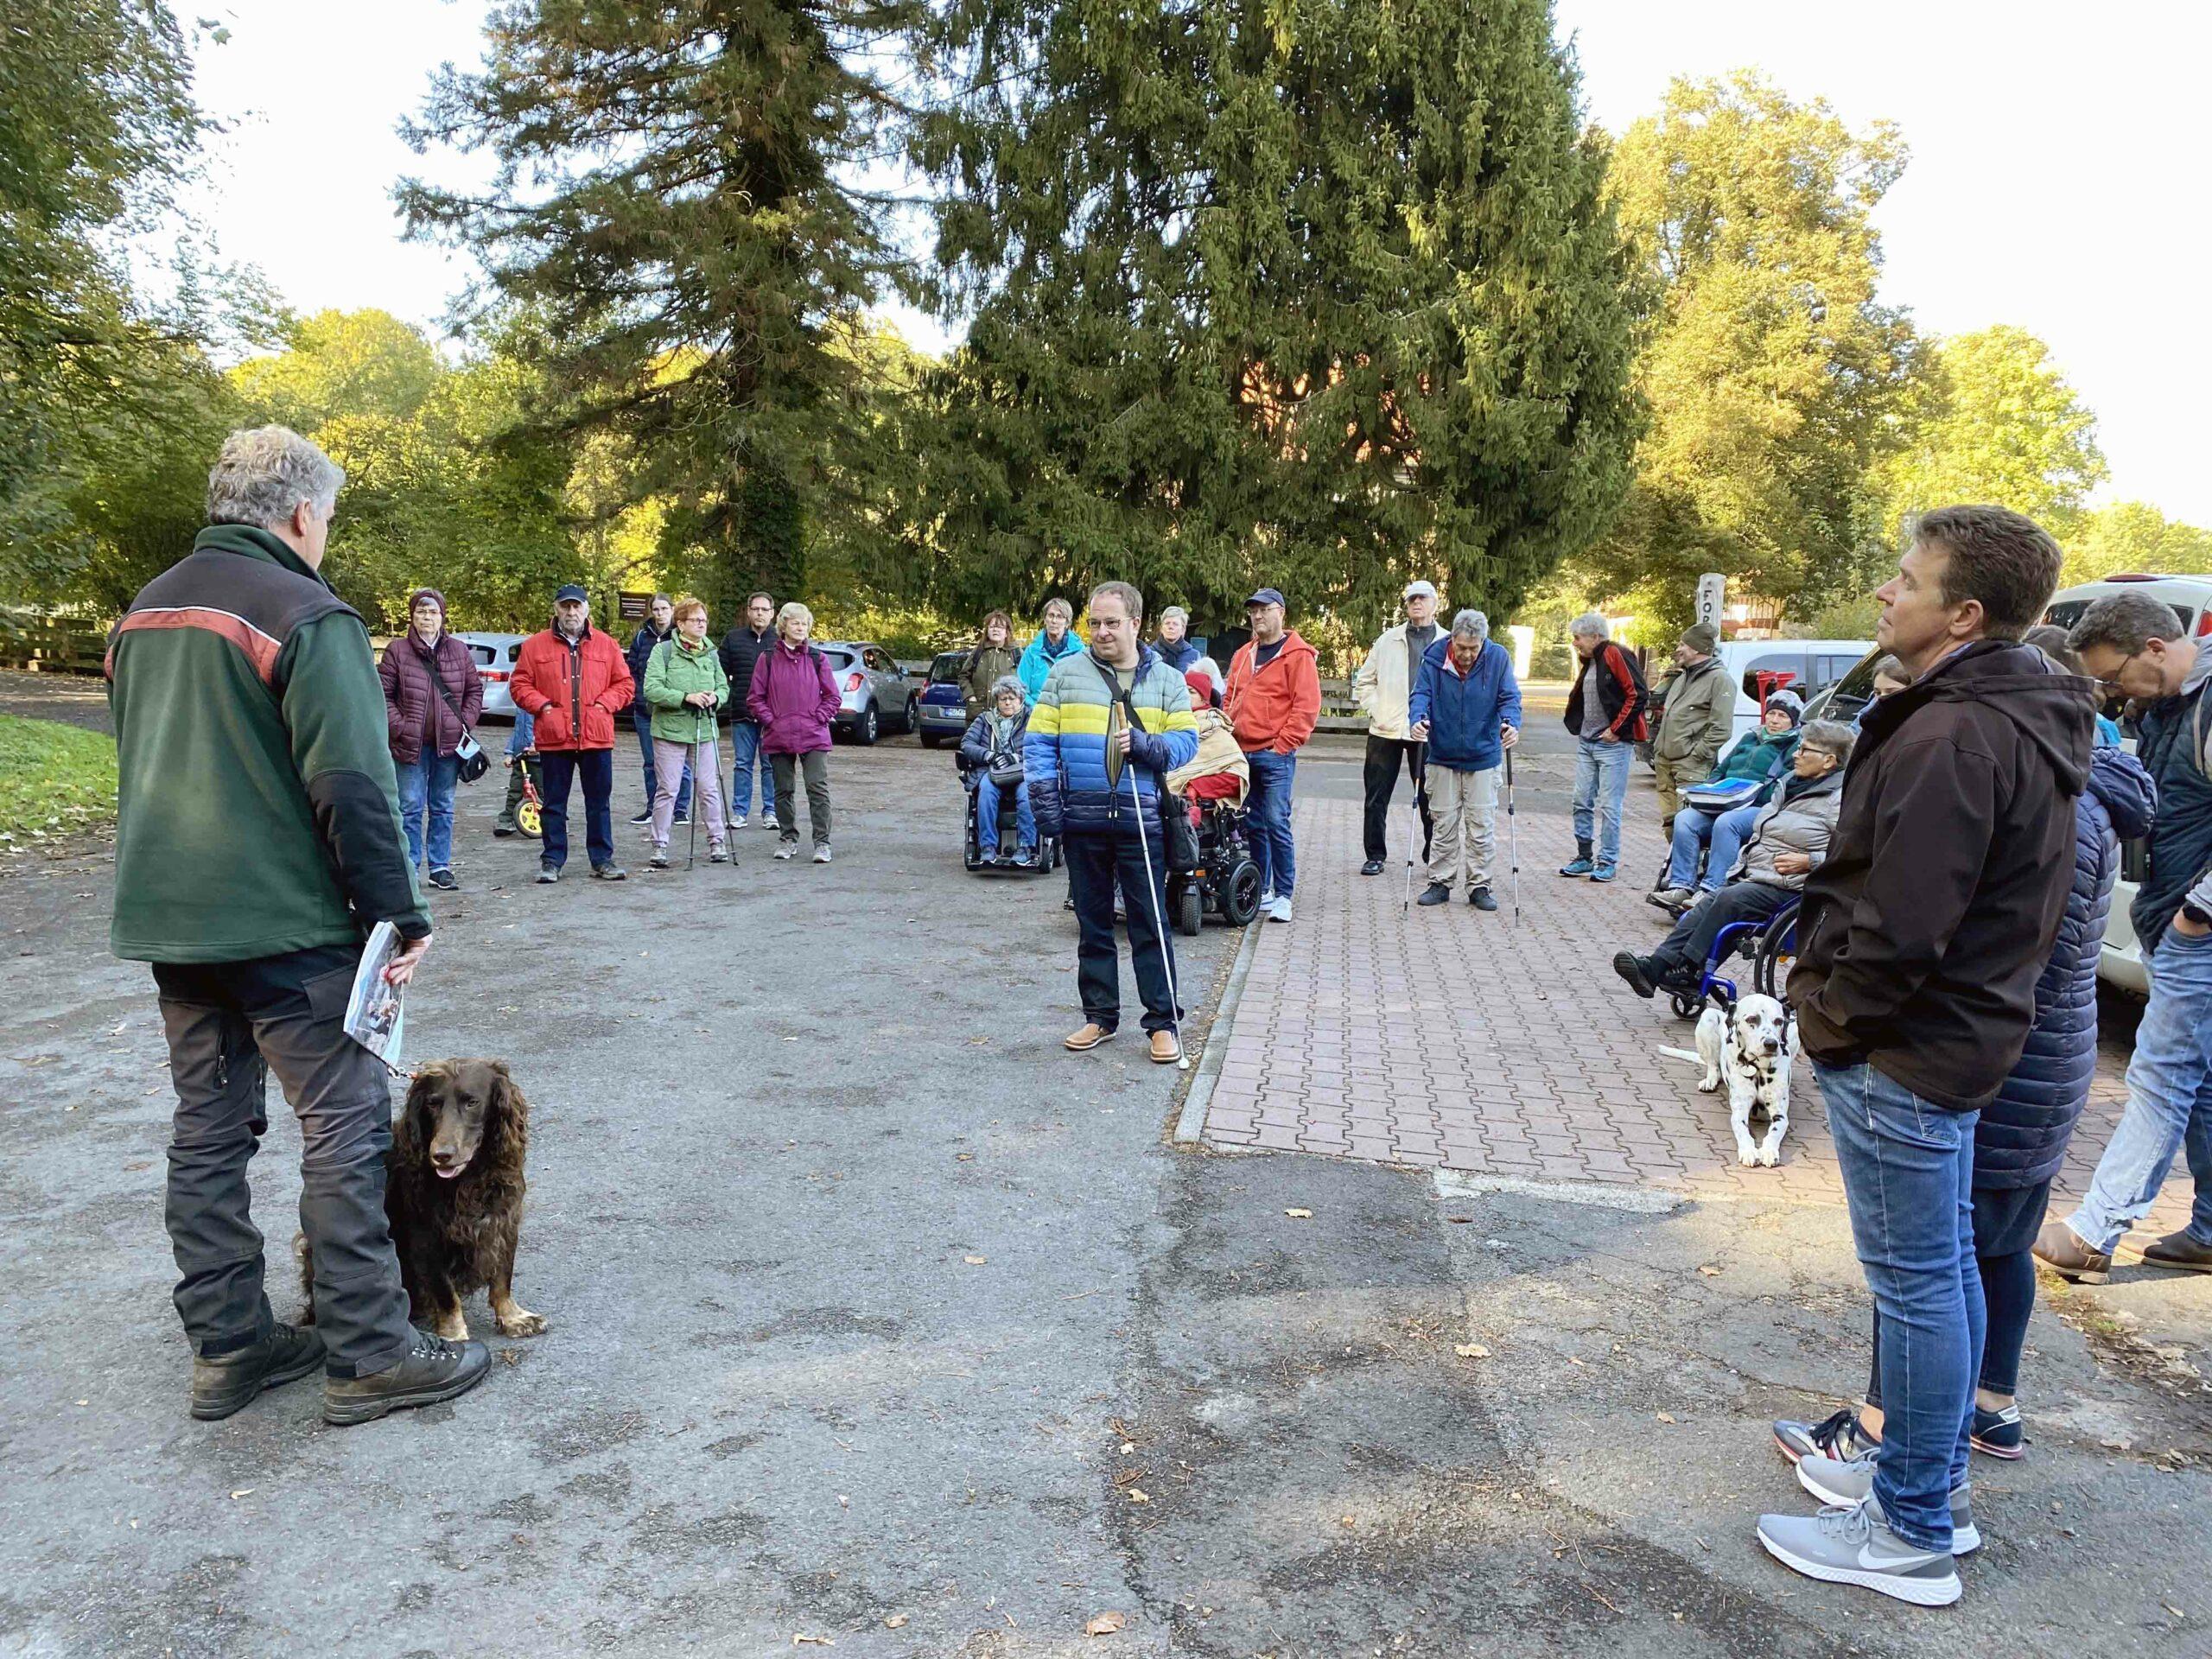 Blick auf eine Gruppe von ca. 25 bis 30 Menschen von ganz jung bis Älter mit und ohne Hilfsmitteln. Links im Bild ist der Förster zu sehen, mit seinem Hund an der Leine.